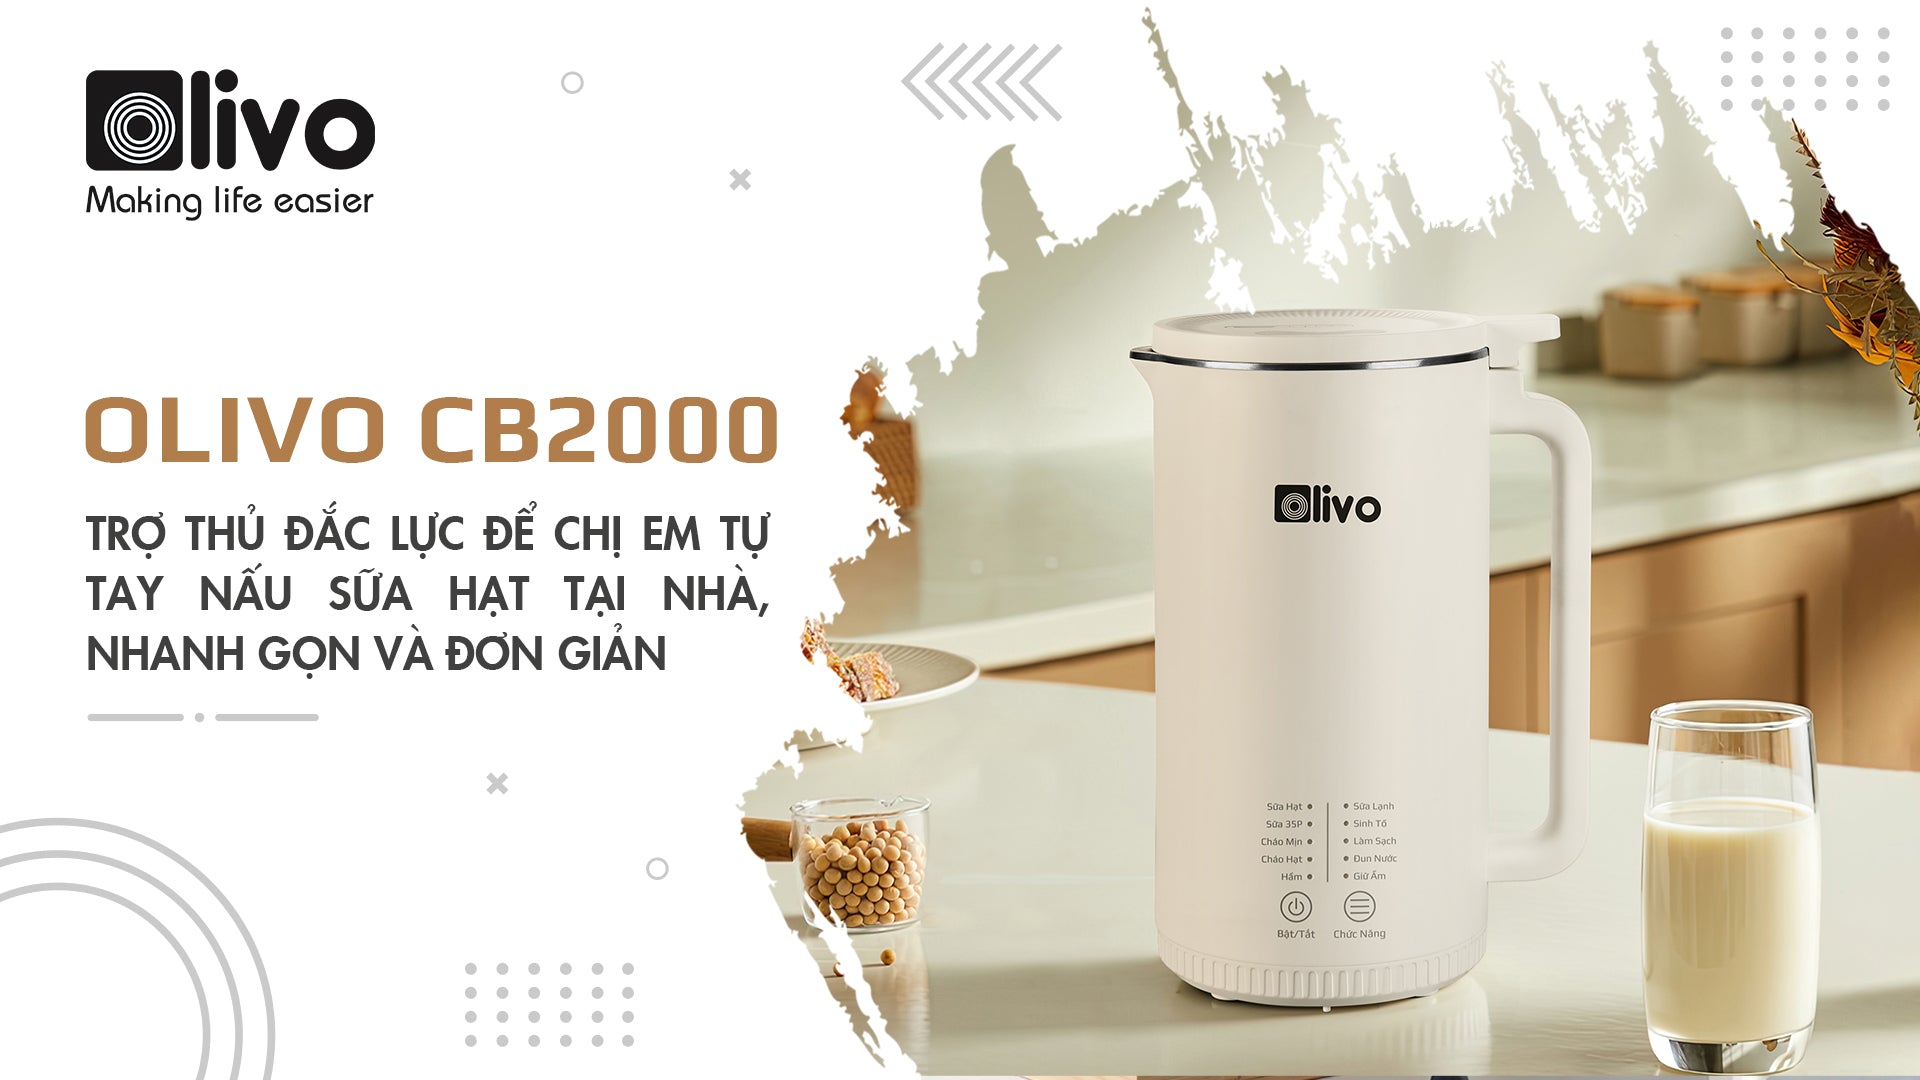 OLIVO CB2000 - Trợ thủ đắc lực để chị em tự tay nấu sữa hạt tại nhà nhanh gọn và đơn giản